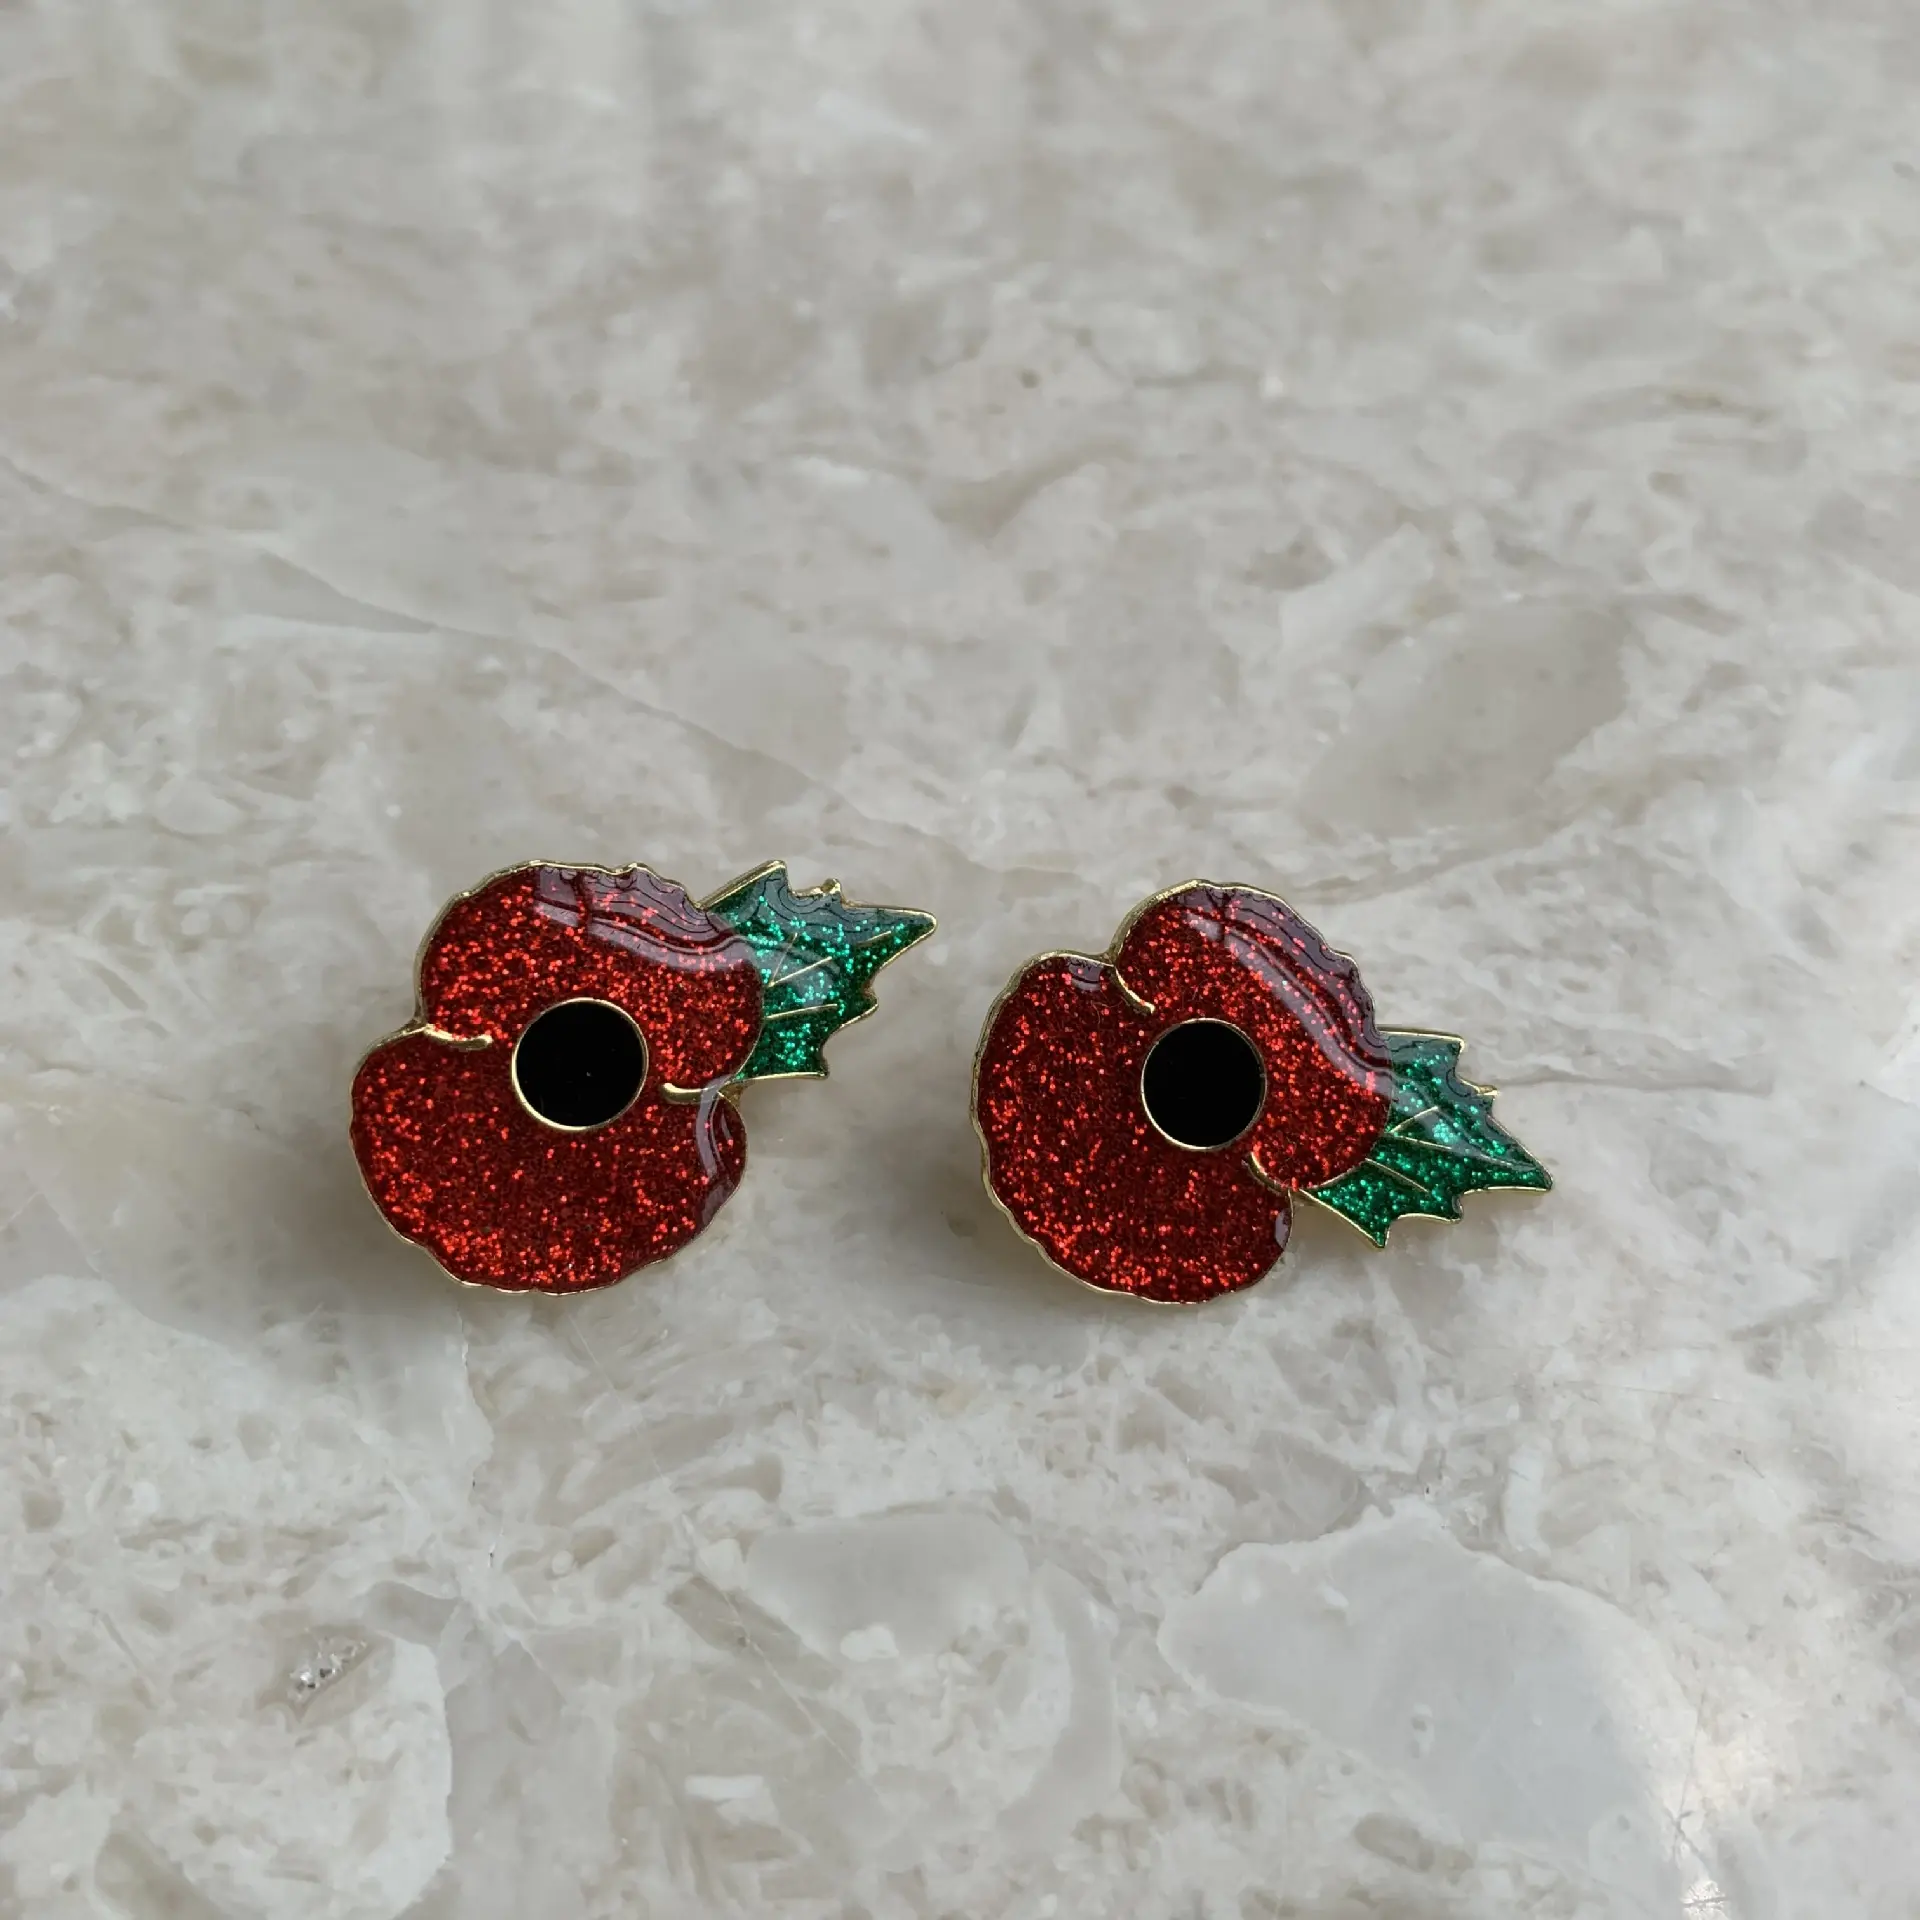 기념일의 금속 붉은 꽃 브로치 하드/소프트 에나멜 양귀비 핀 배지, 우리가 잊지 않도록 영국 양귀비 제 2 차 세계 대전 배지 핀